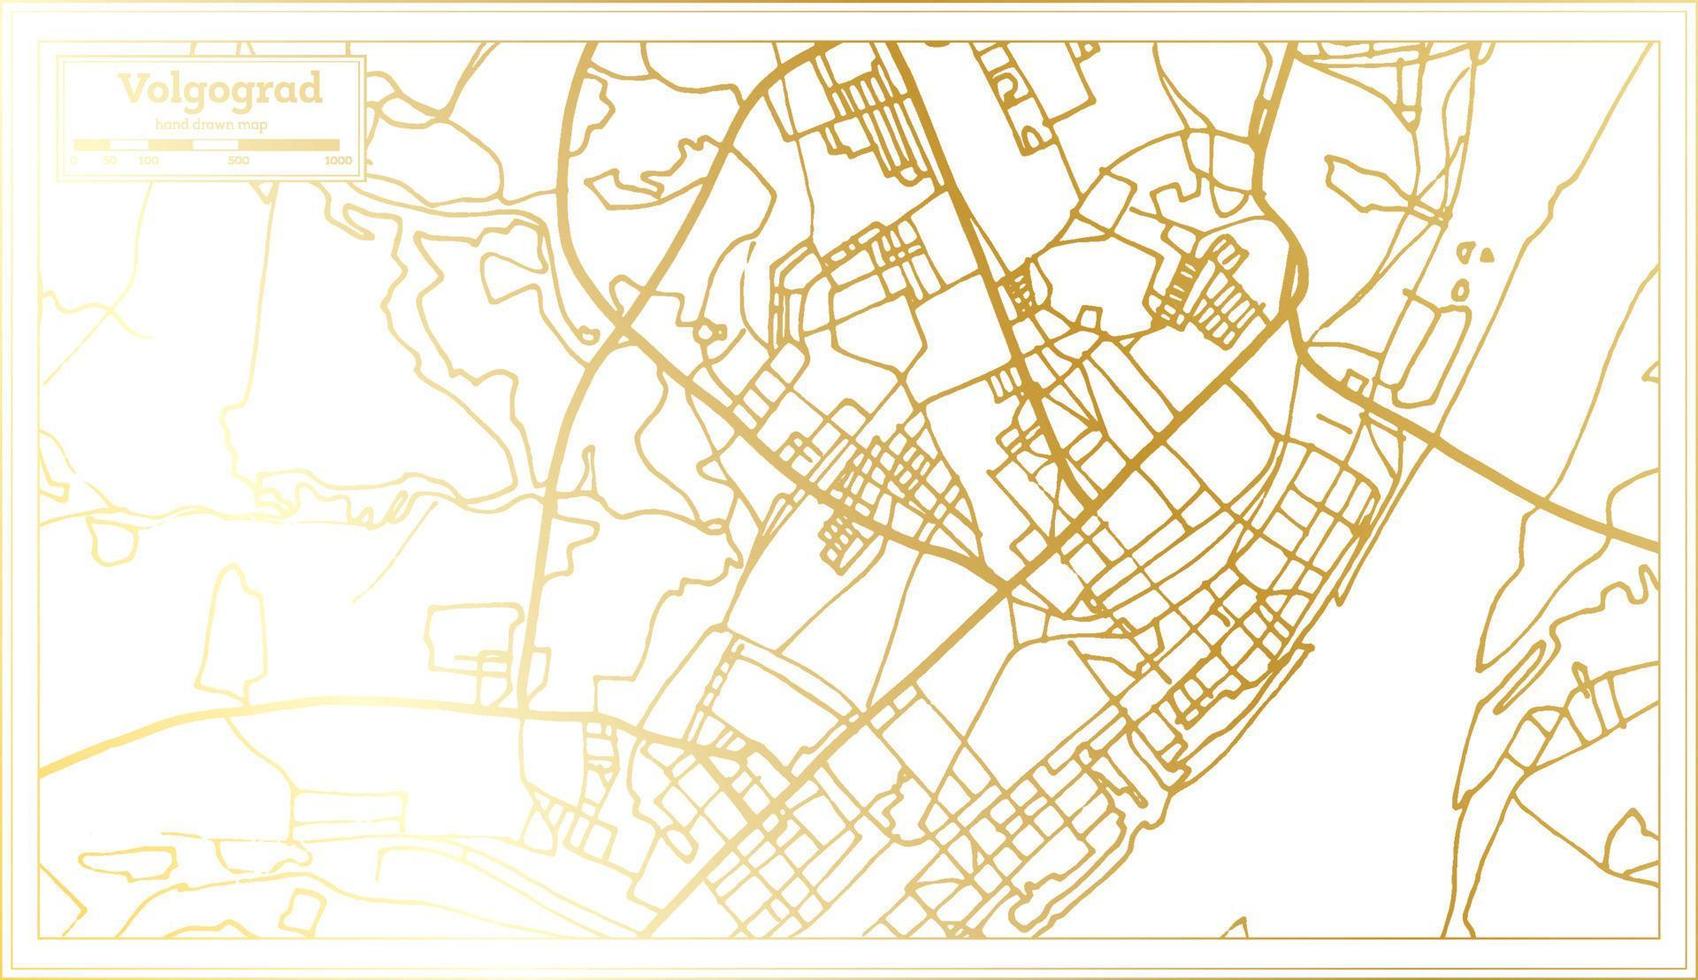 plan de la ville de volgograd russie dans un style rétro de couleur dorée. carte muette. vecteur